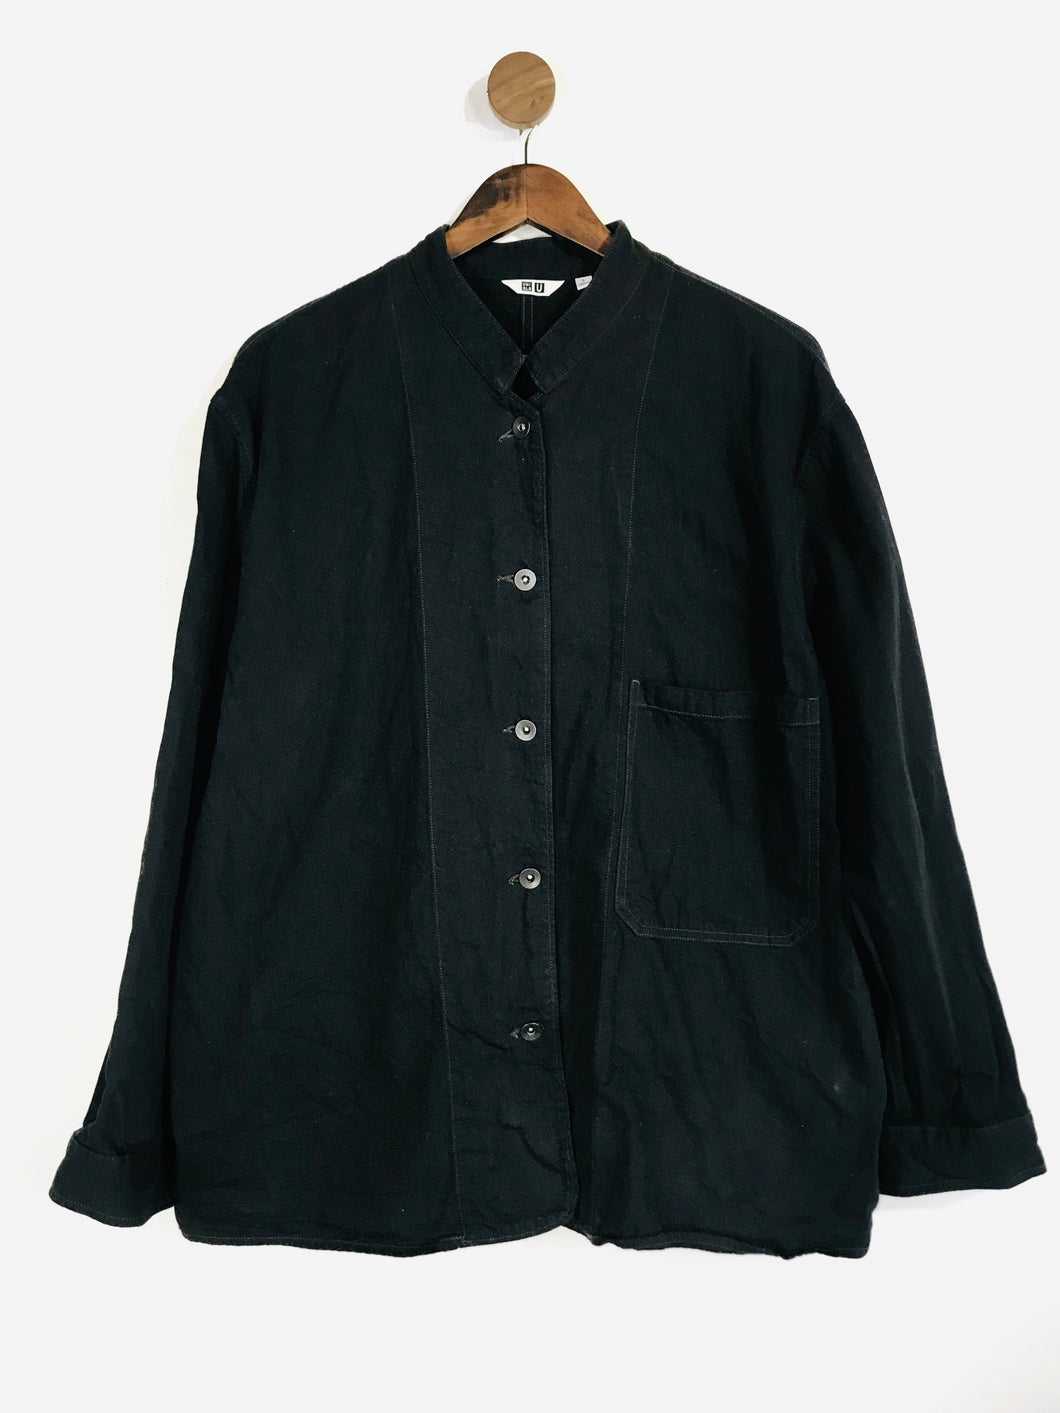 Uniqlo Women’s Cotton Button-Up Shirt | L | Black